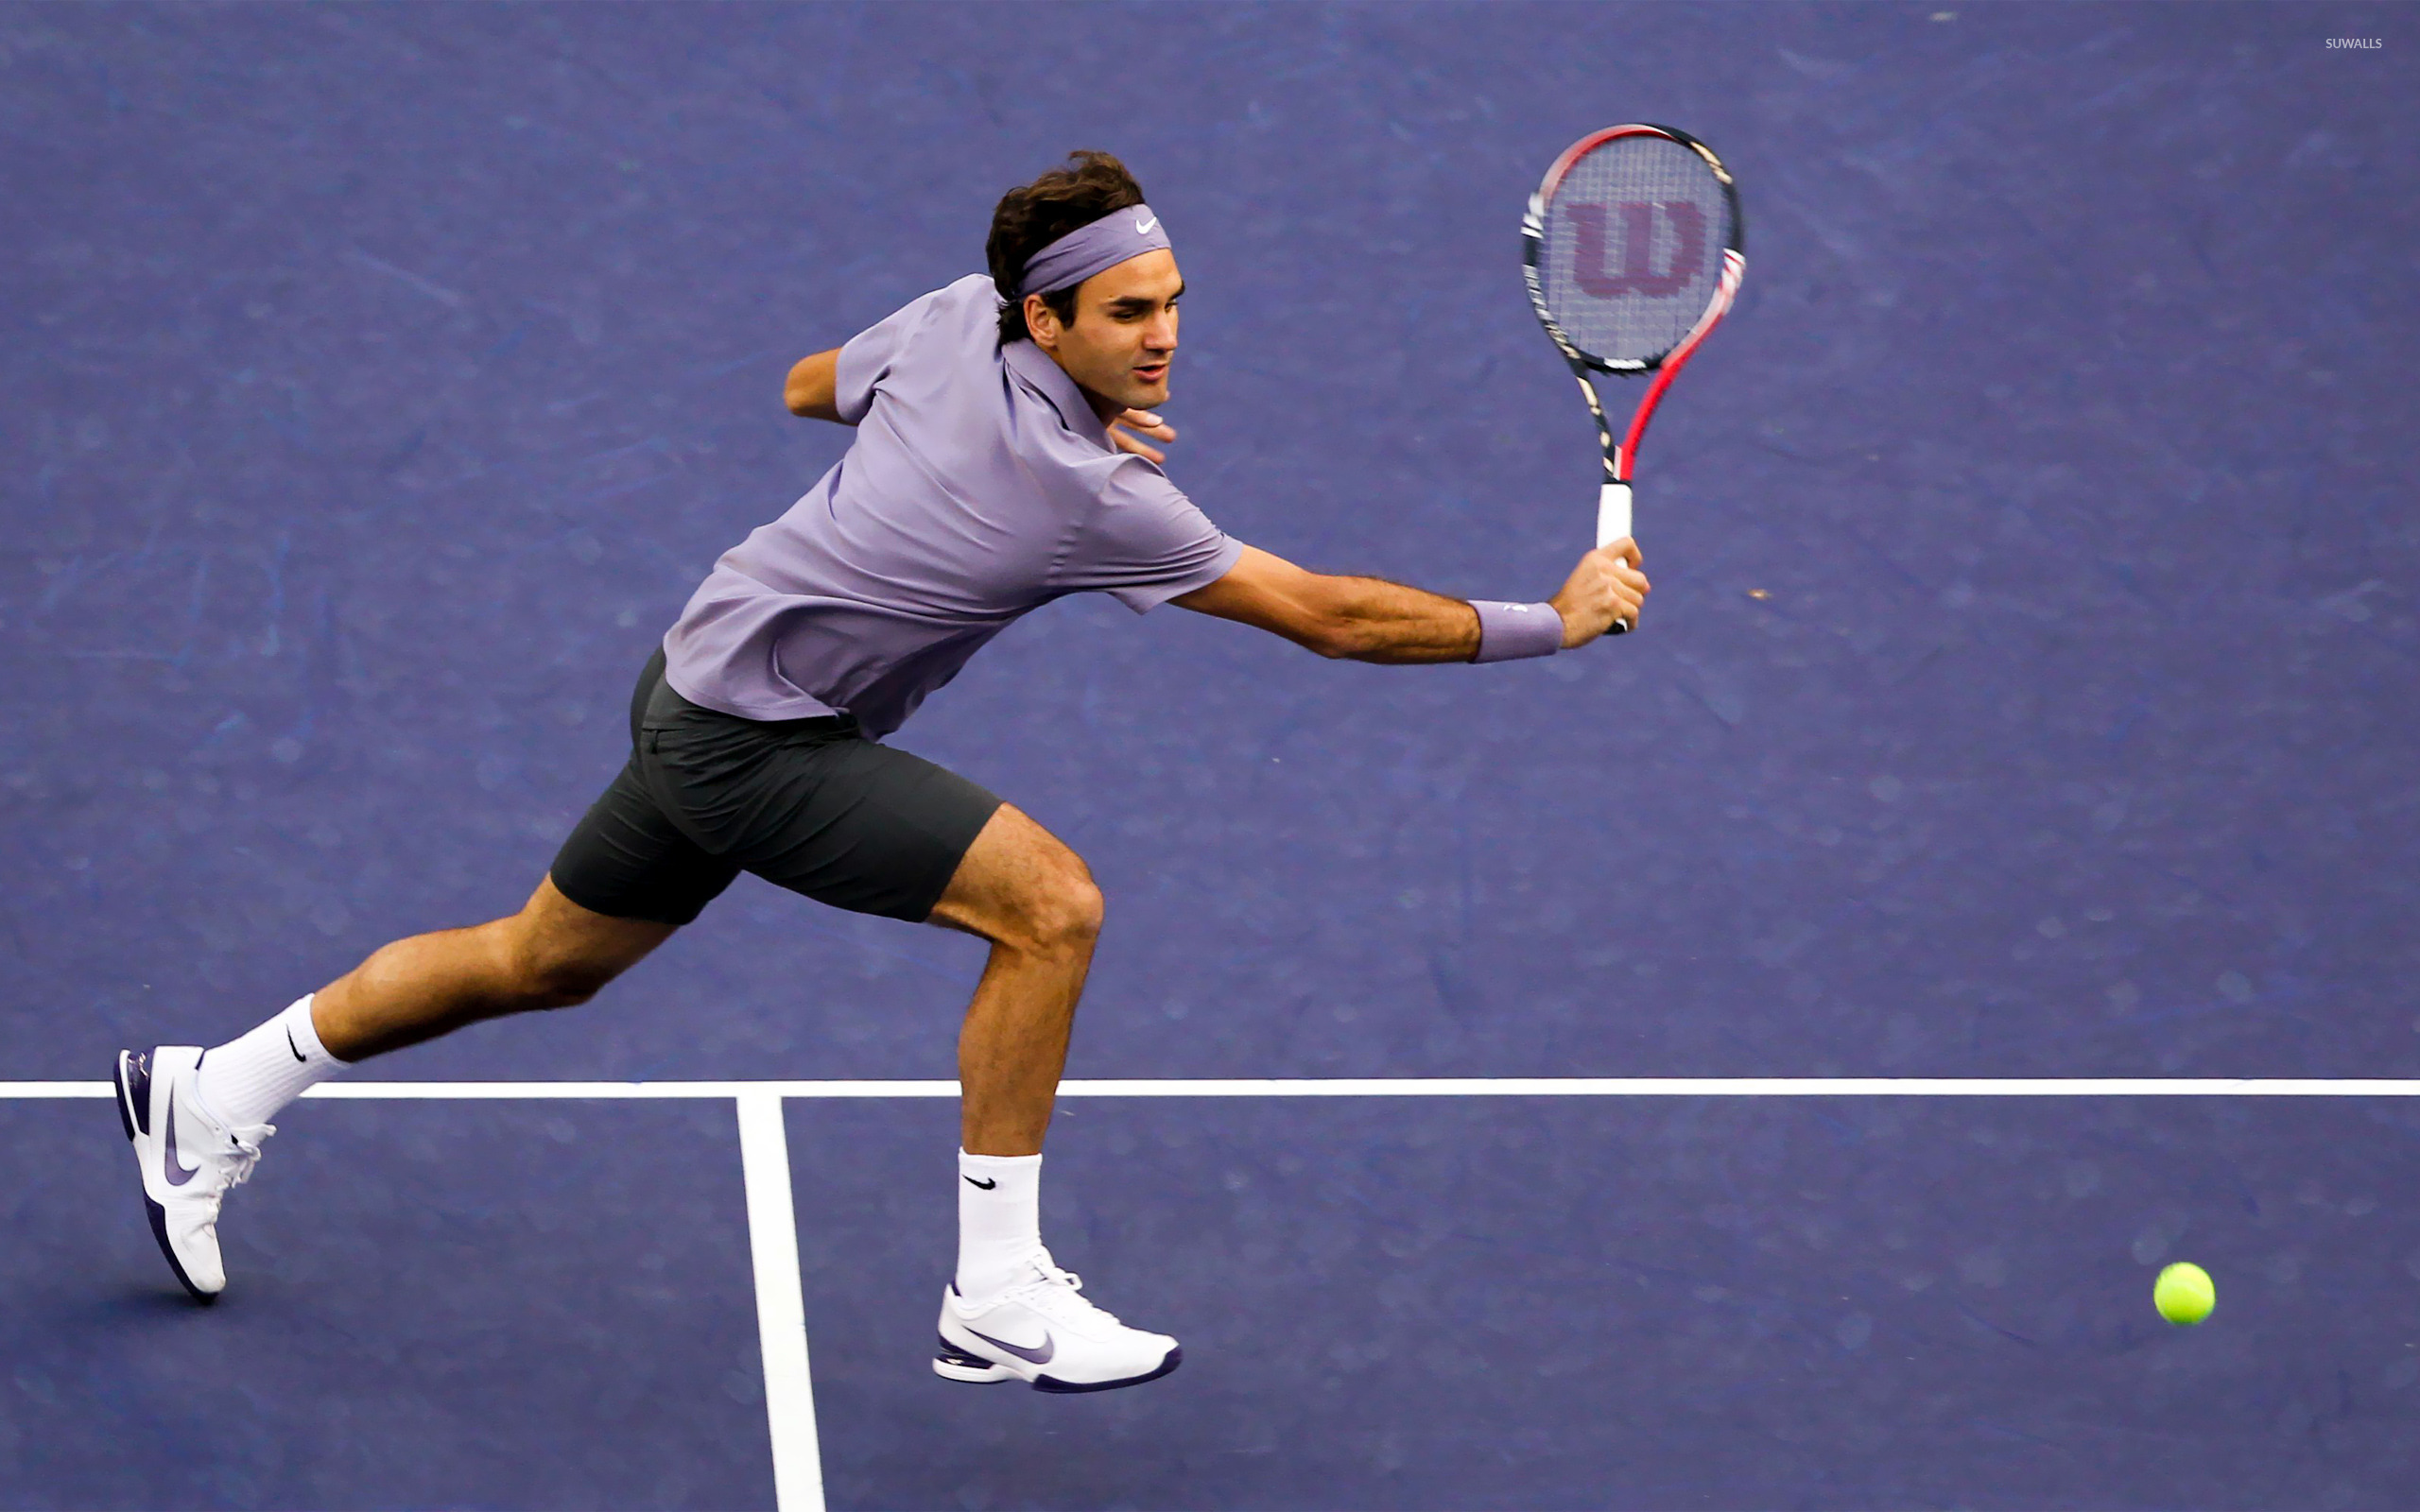 Roger Federer HD Wallpapers  4K Backgrounds  Wallpapers Den